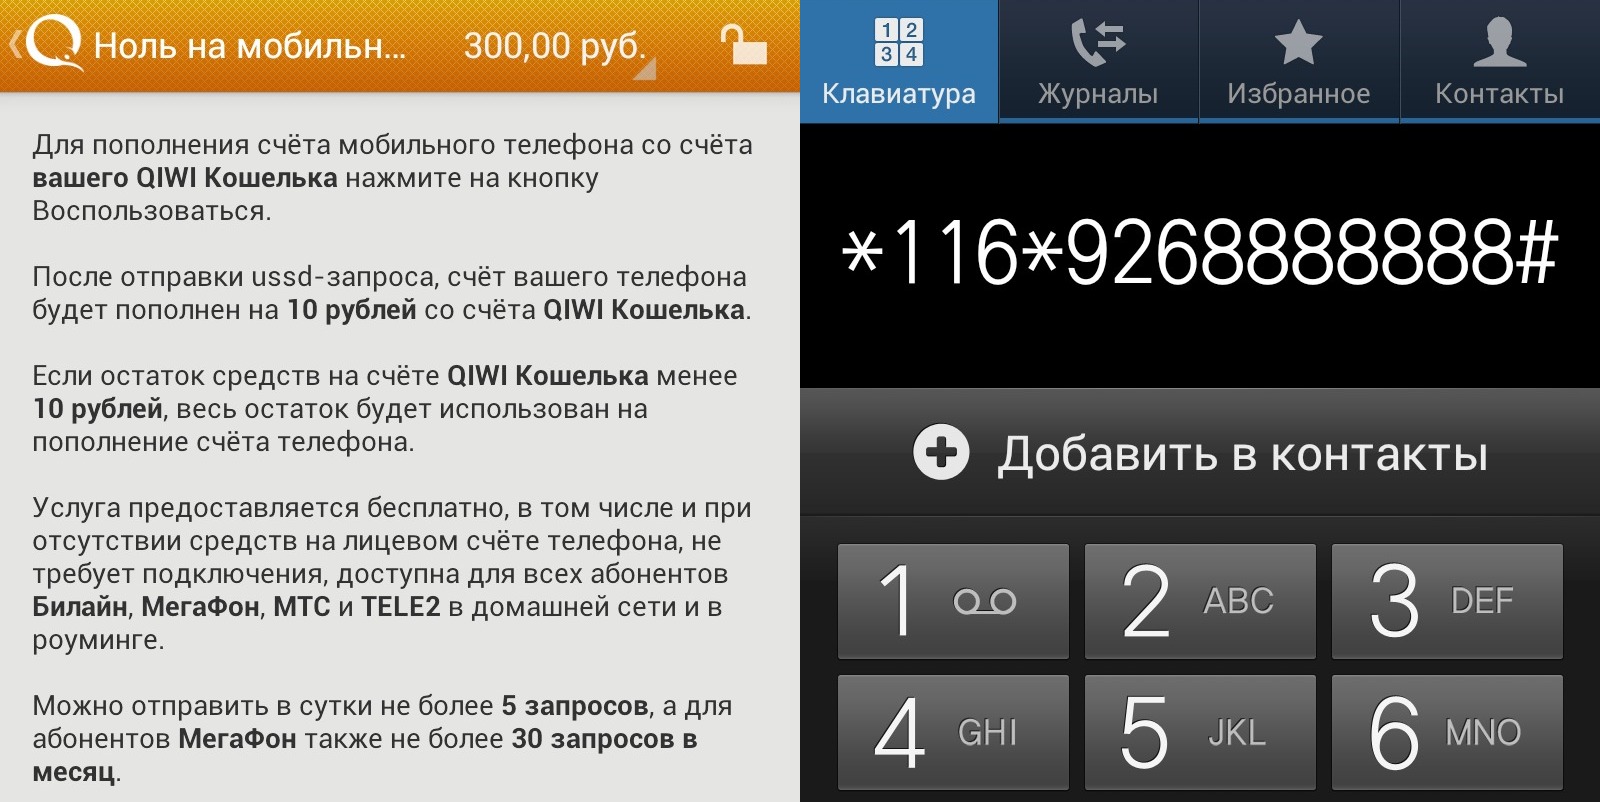 Один рубль на счет телефона. Баланс телефона. Программа для пополнения счета. Пополнение мобильного. Отрицательный баланс на телефоне картинка.